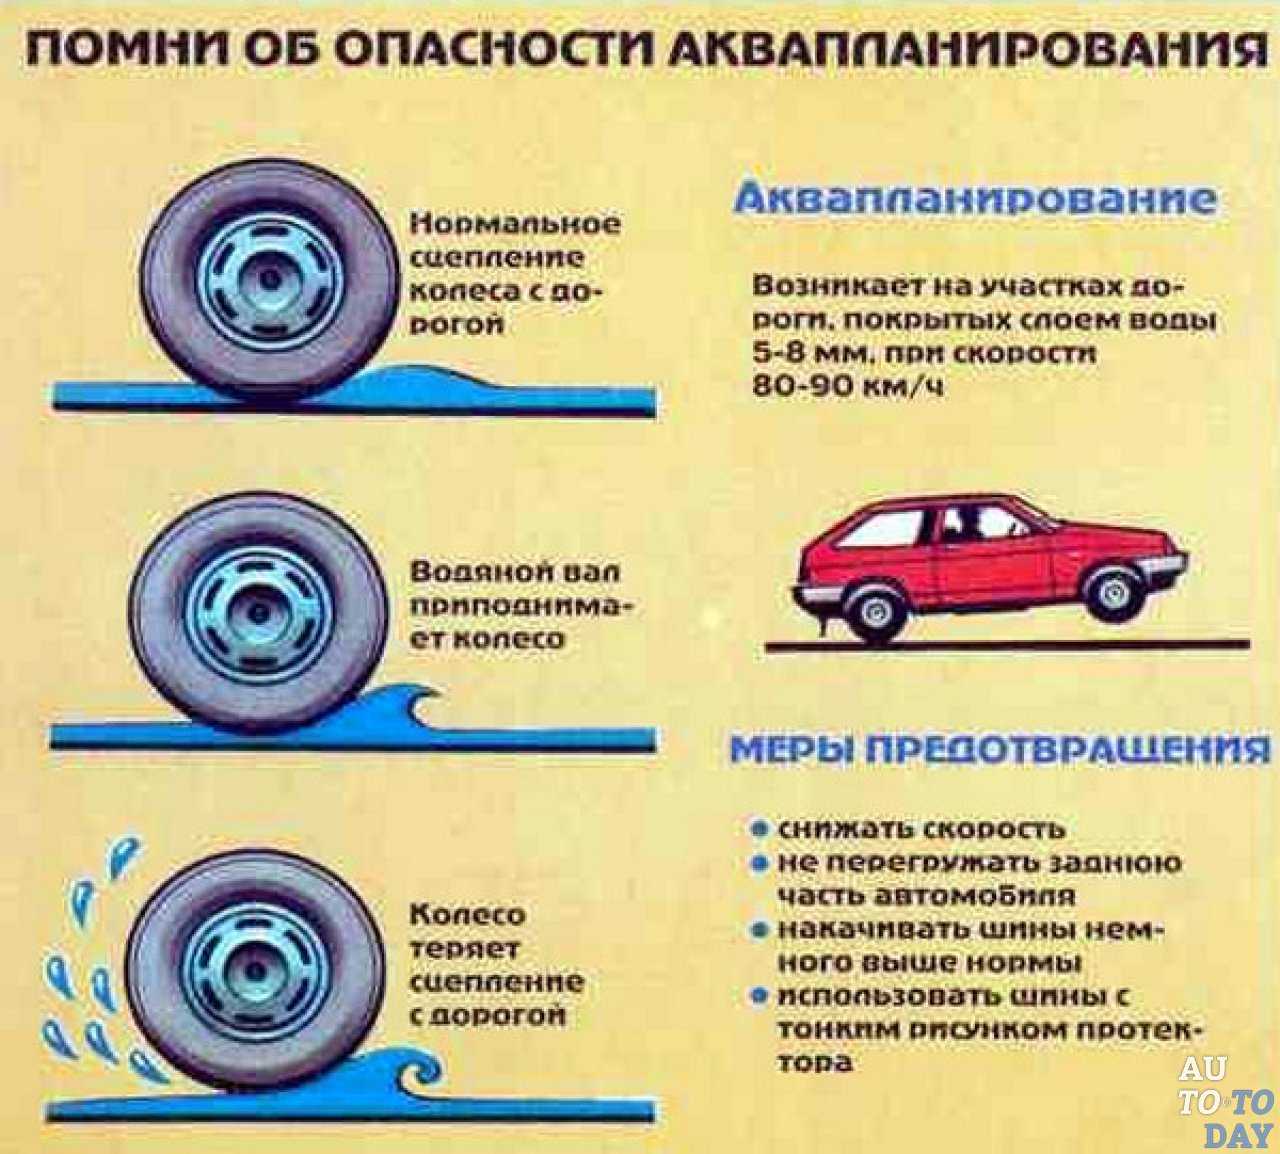 Аквапланирование — опасное явление, при котором покрышки теряют сцепление с дорогой Возникать такая проблема может даже с автомобилями, на которых установлены новые шины